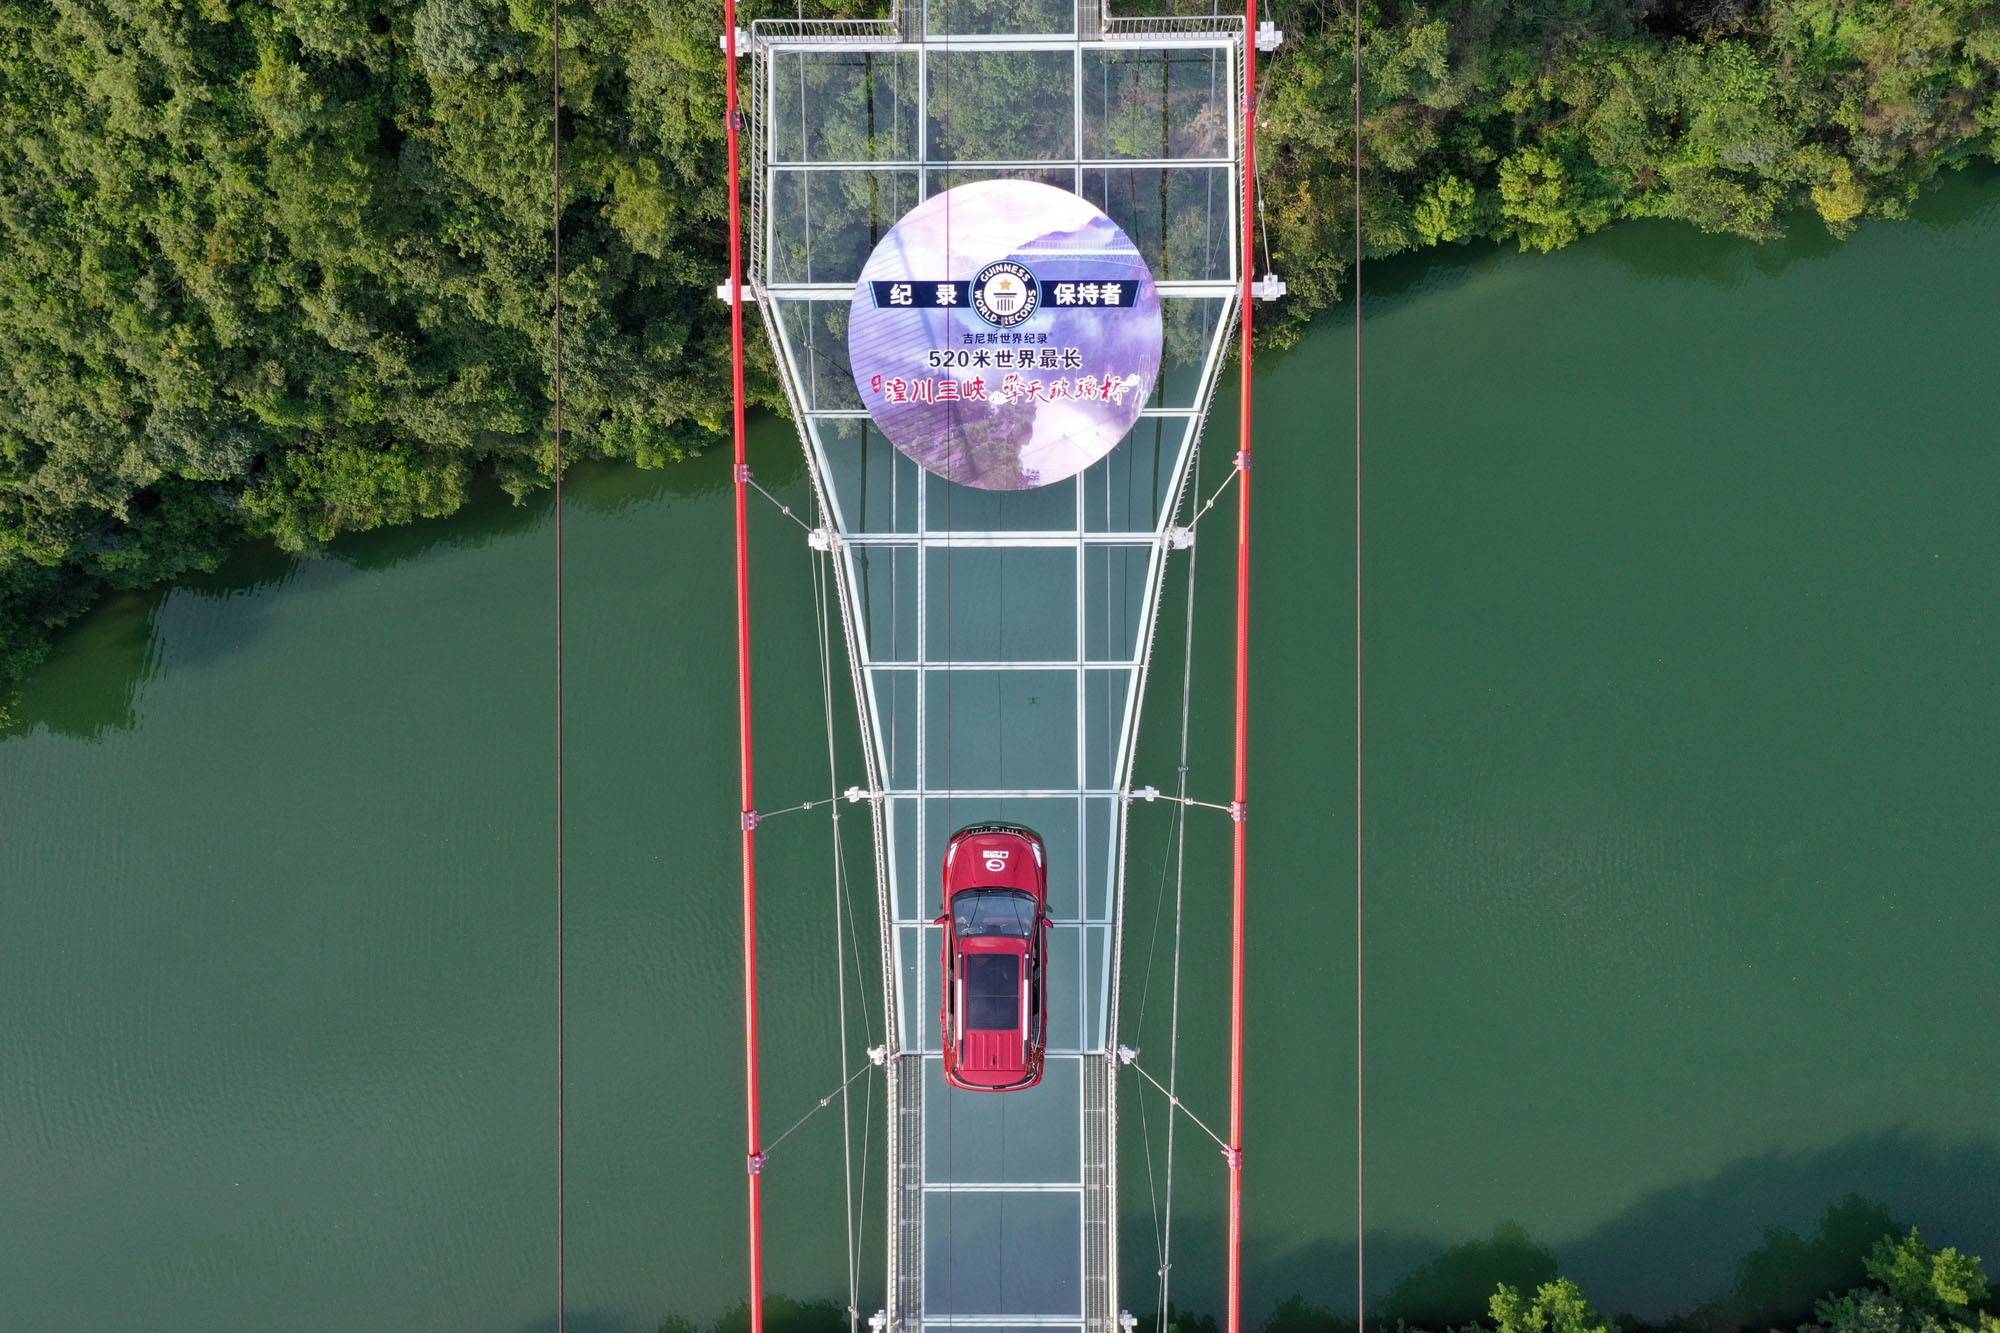 【清远.连州】湟川三峡 ·擎天玻璃桥-网红打卡，吉尼斯世界纪录认证的世界上“最长的玻璃桥”，成人票（含擎天玻璃桥门票、渡船、回程旅游观光车接送）